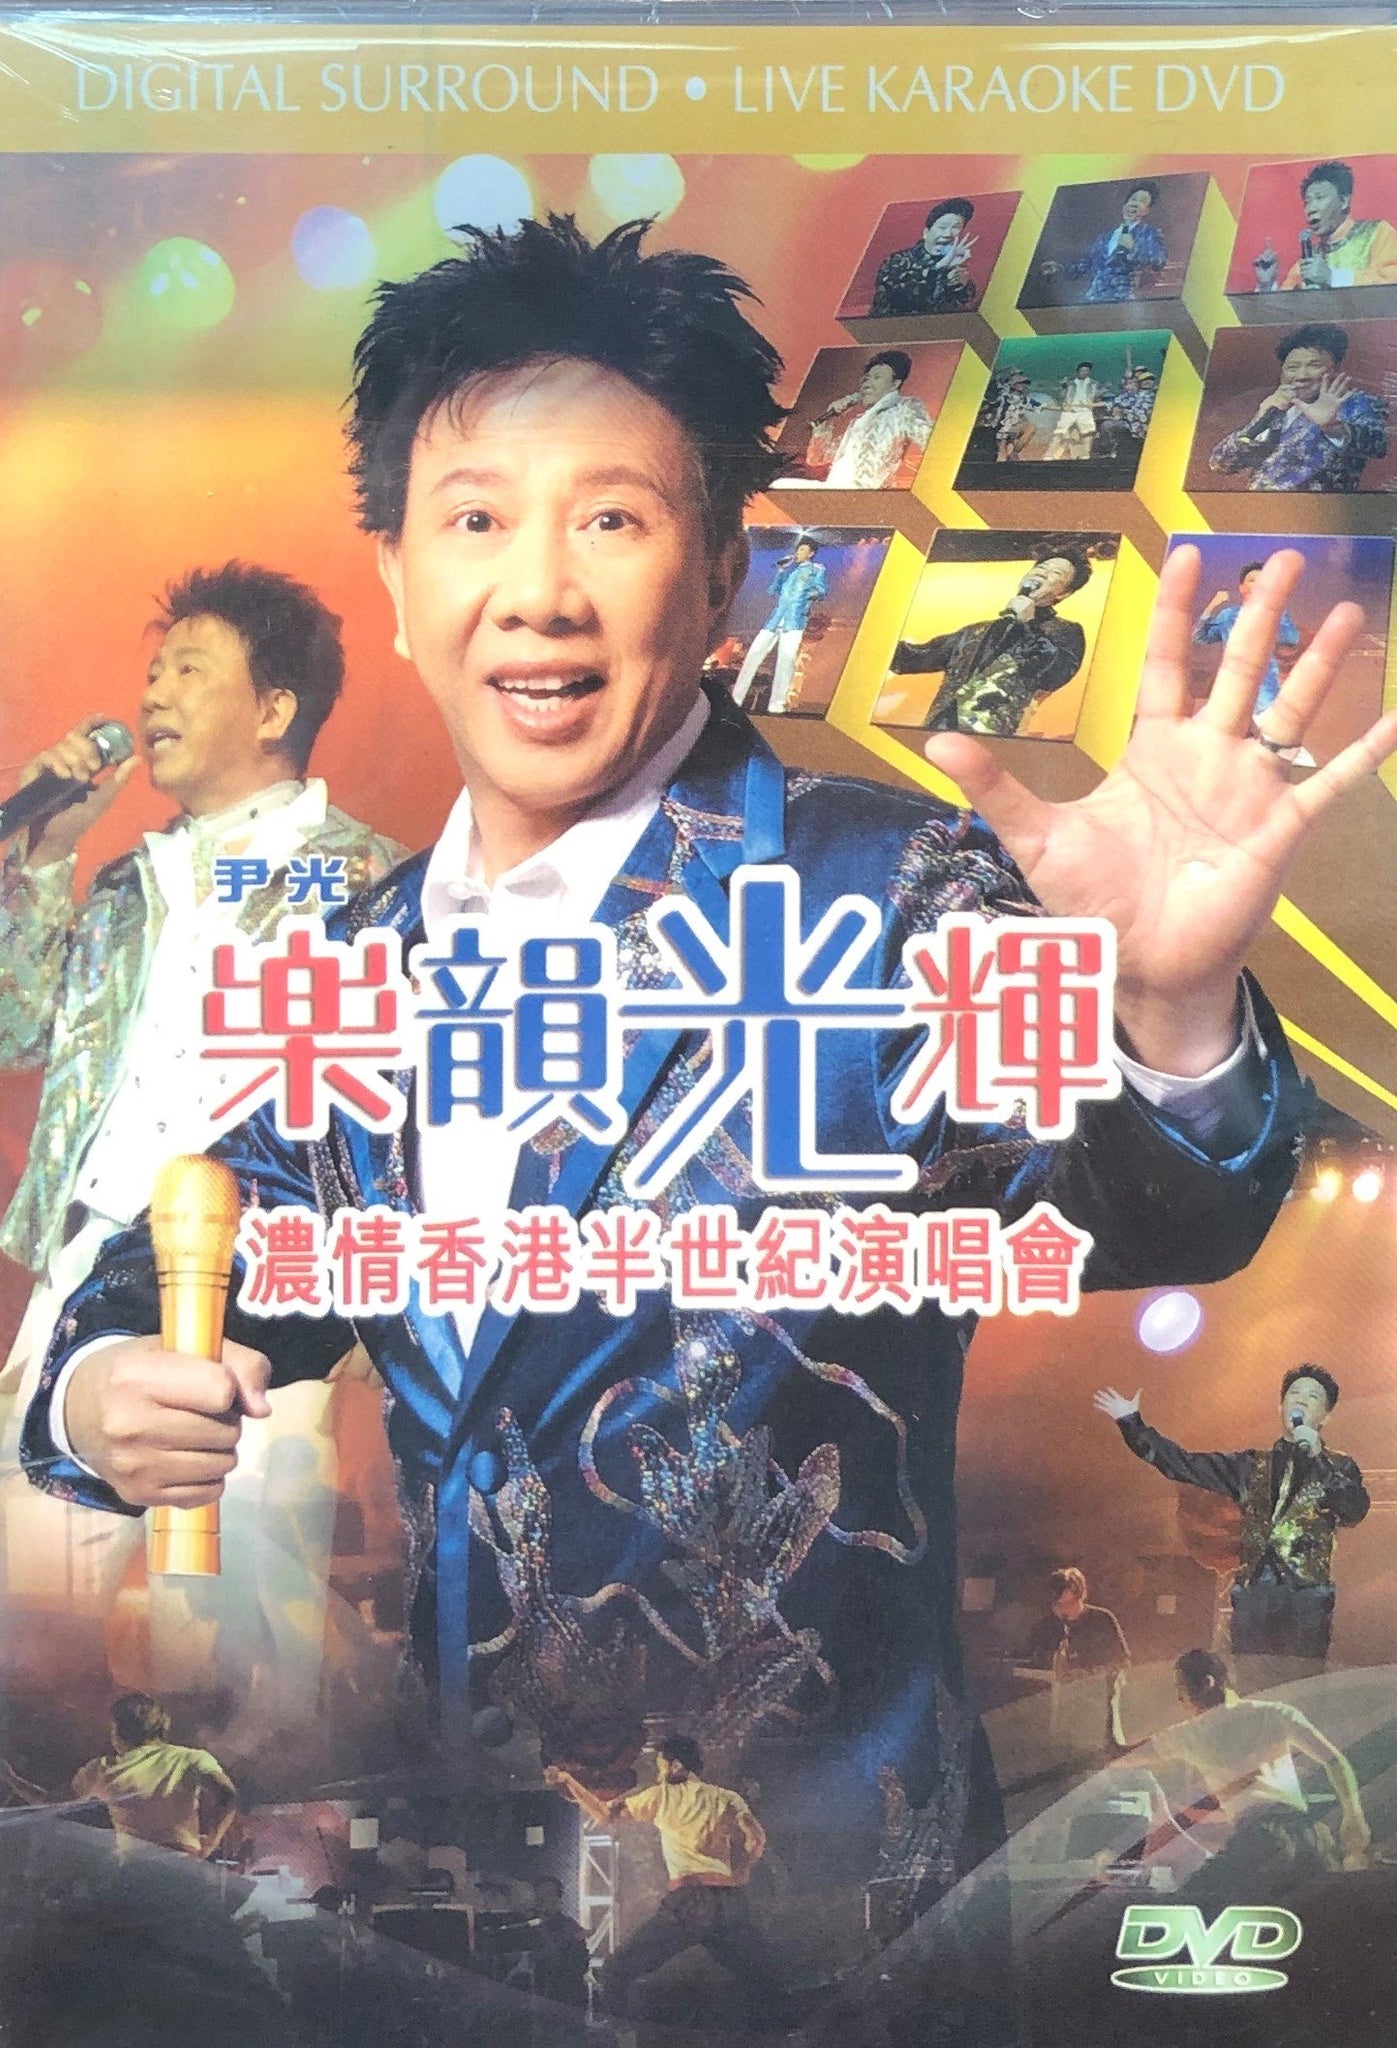 WAN KWONG - 尹光 樂韻光輝濃情香港半世紀演唱會 LIVE KARAOKE DVD (REGION FREE)